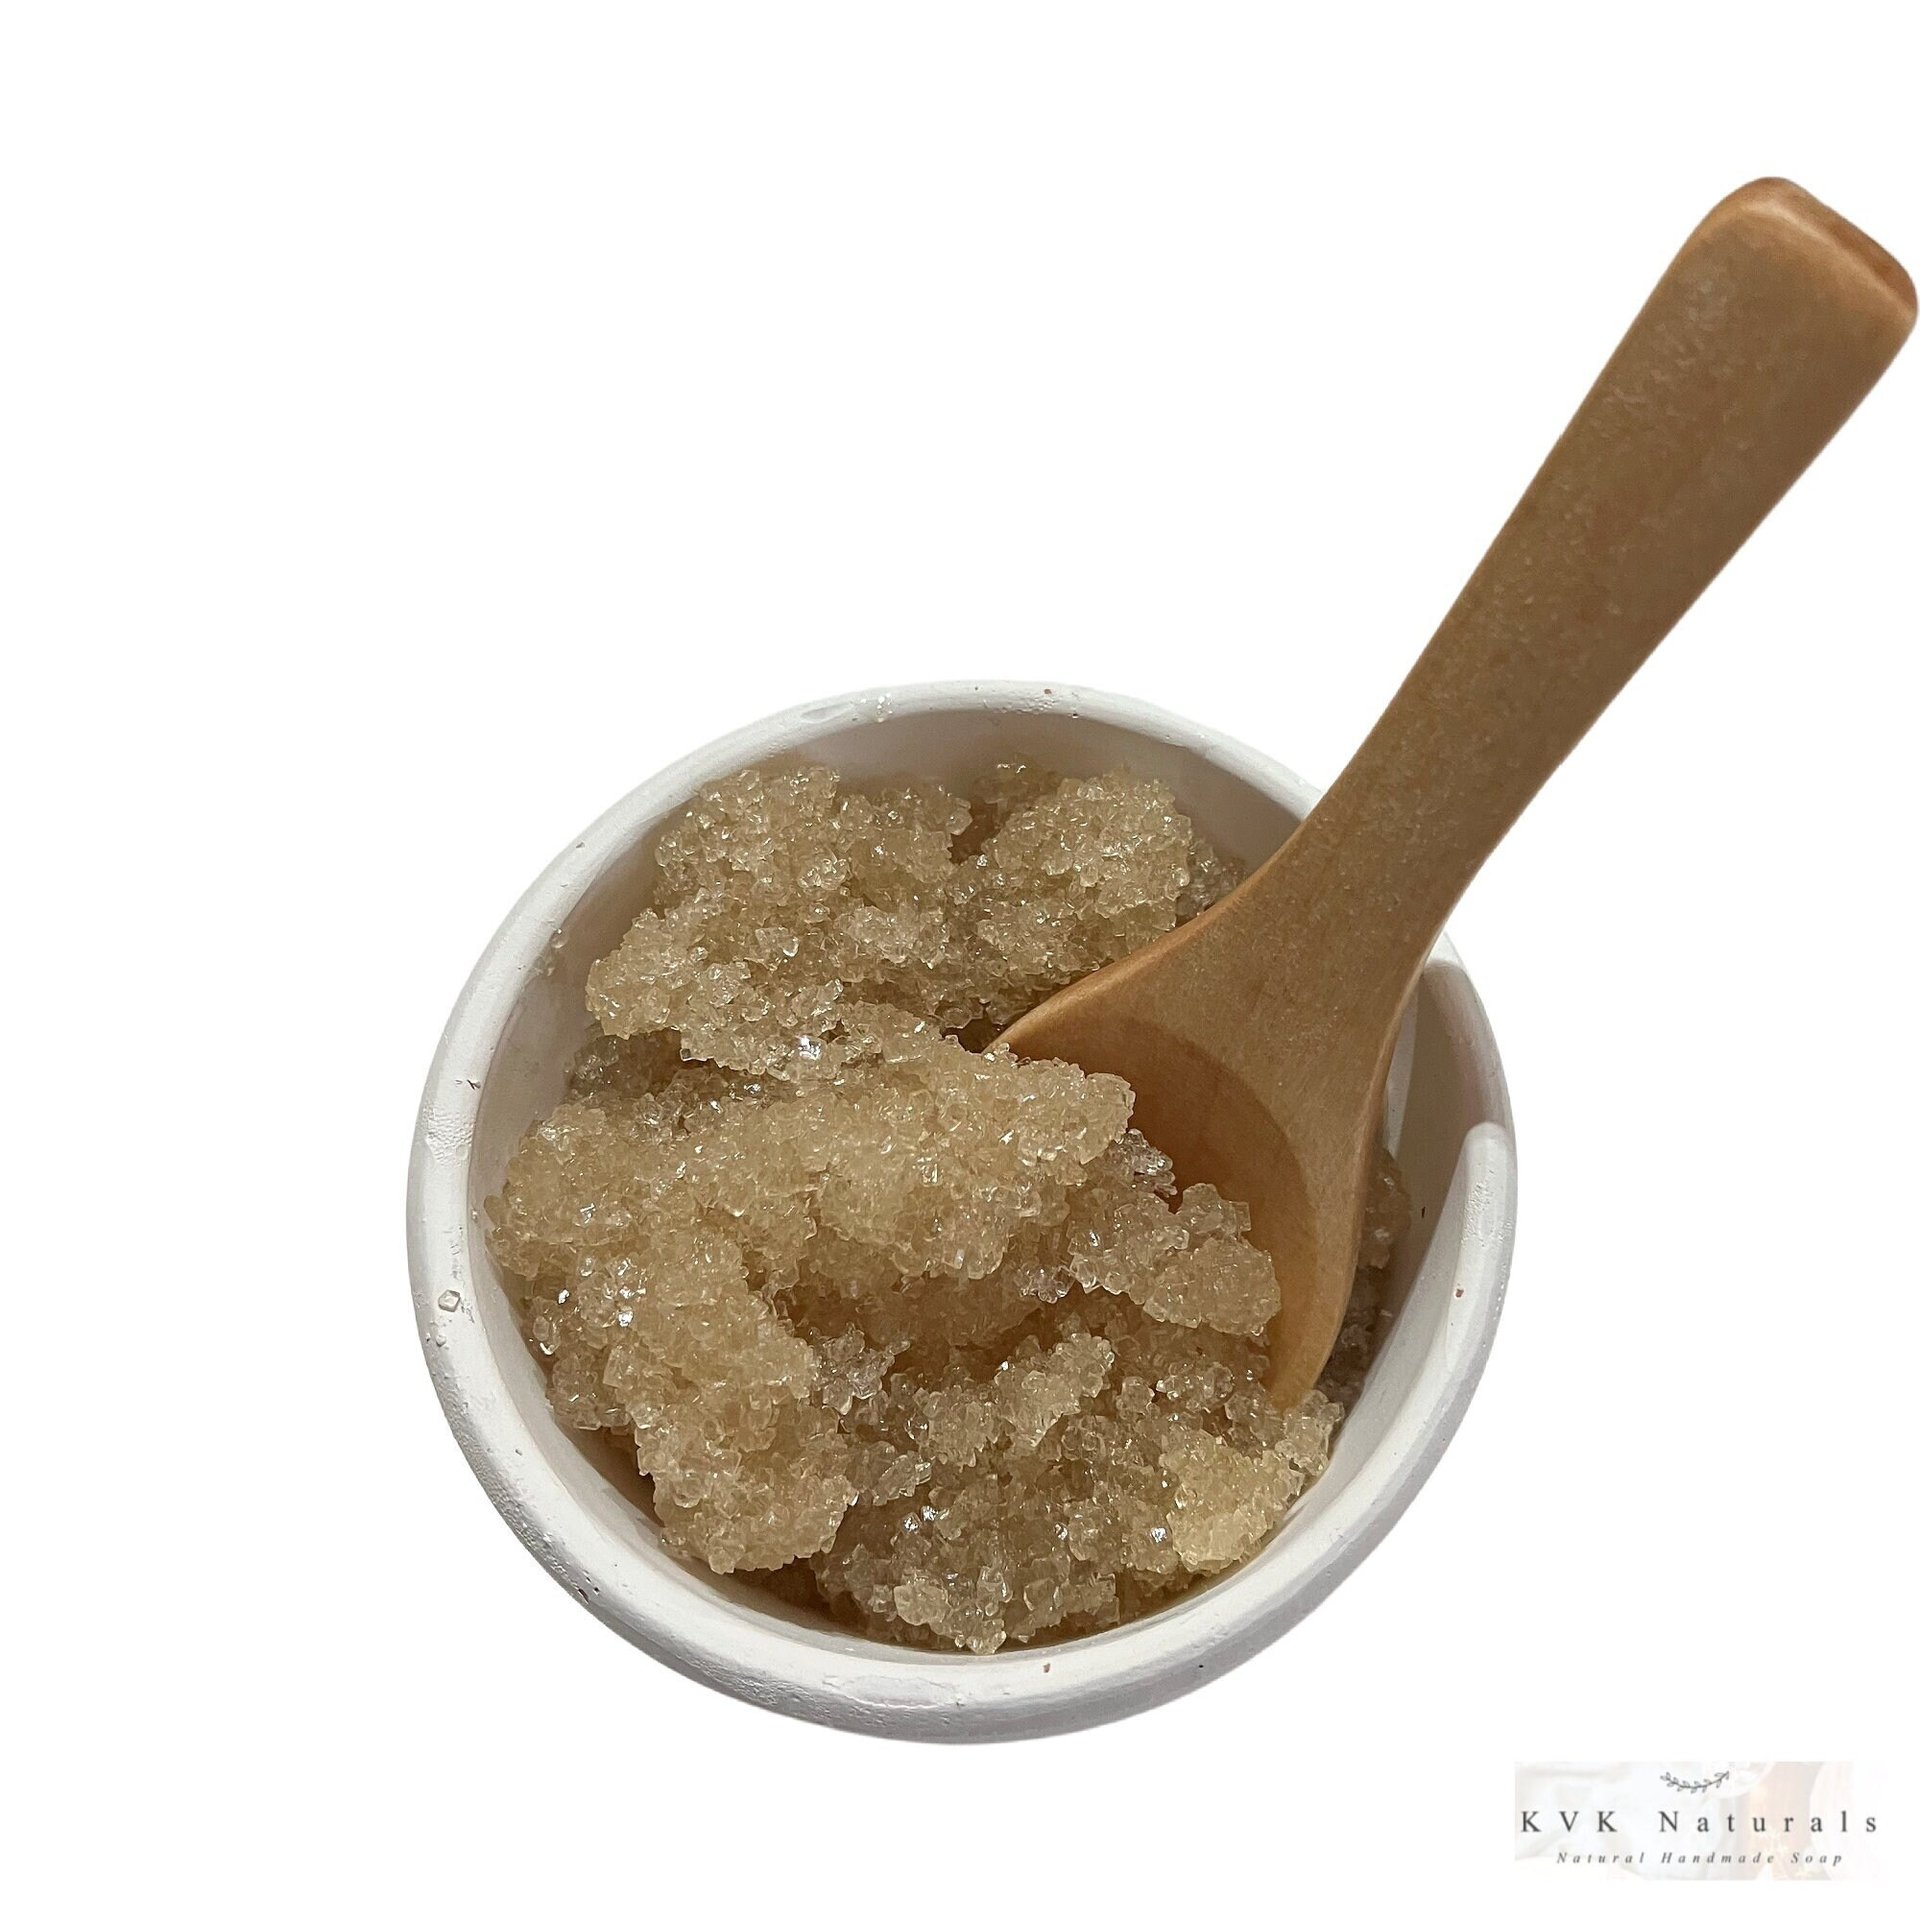 Sugar Scrub Vanilla Oatmeal - Sugar Scrubs, Body Scrub, Exfoliating Scrub, Organic Body Scrub